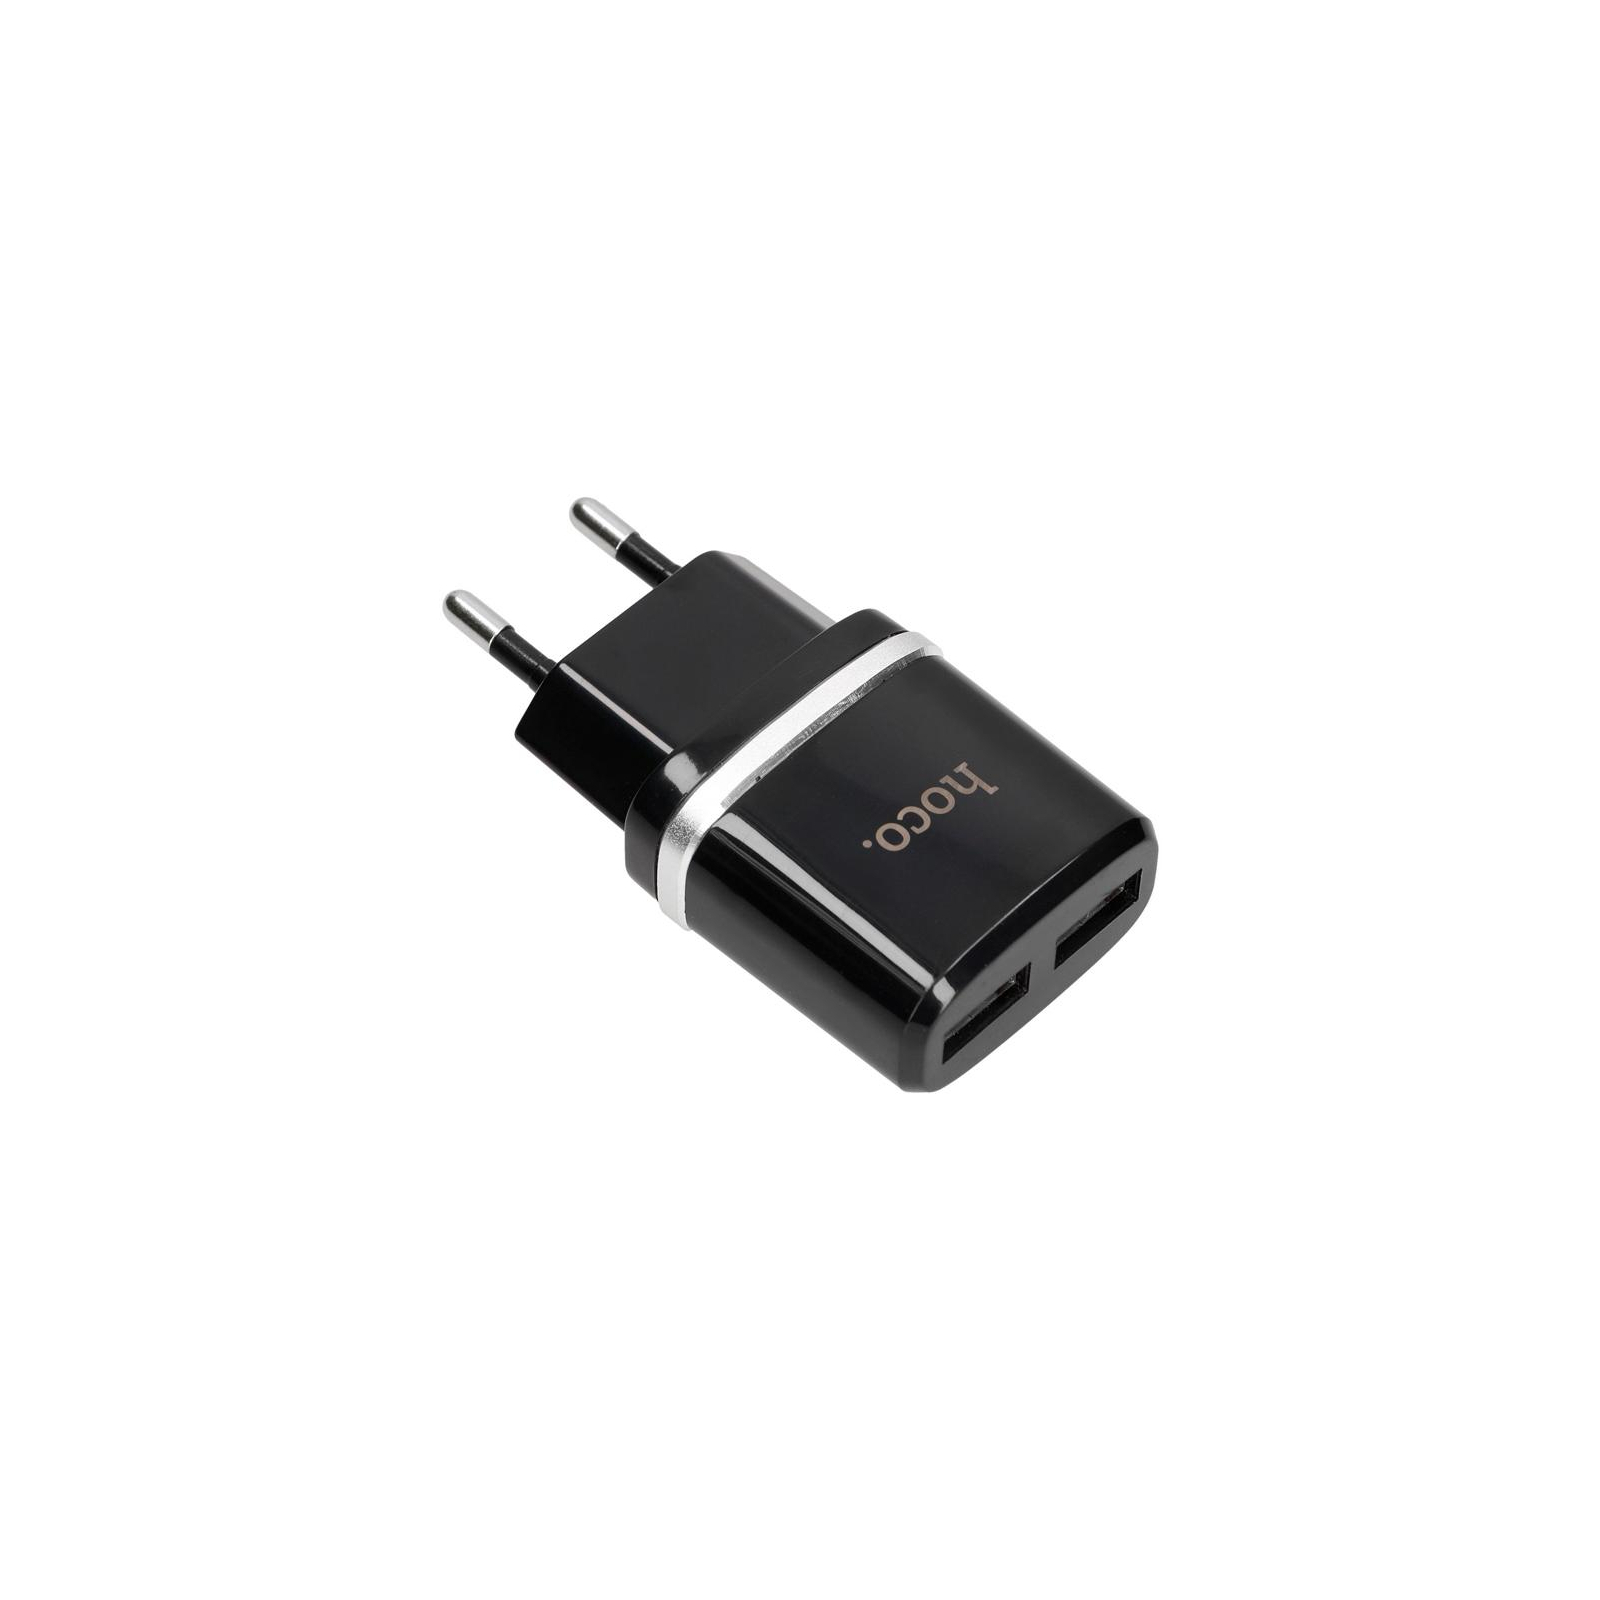 Зарядний пристрій HOCO C12 2*USB, 2.4A, Black (65596) зображення 3